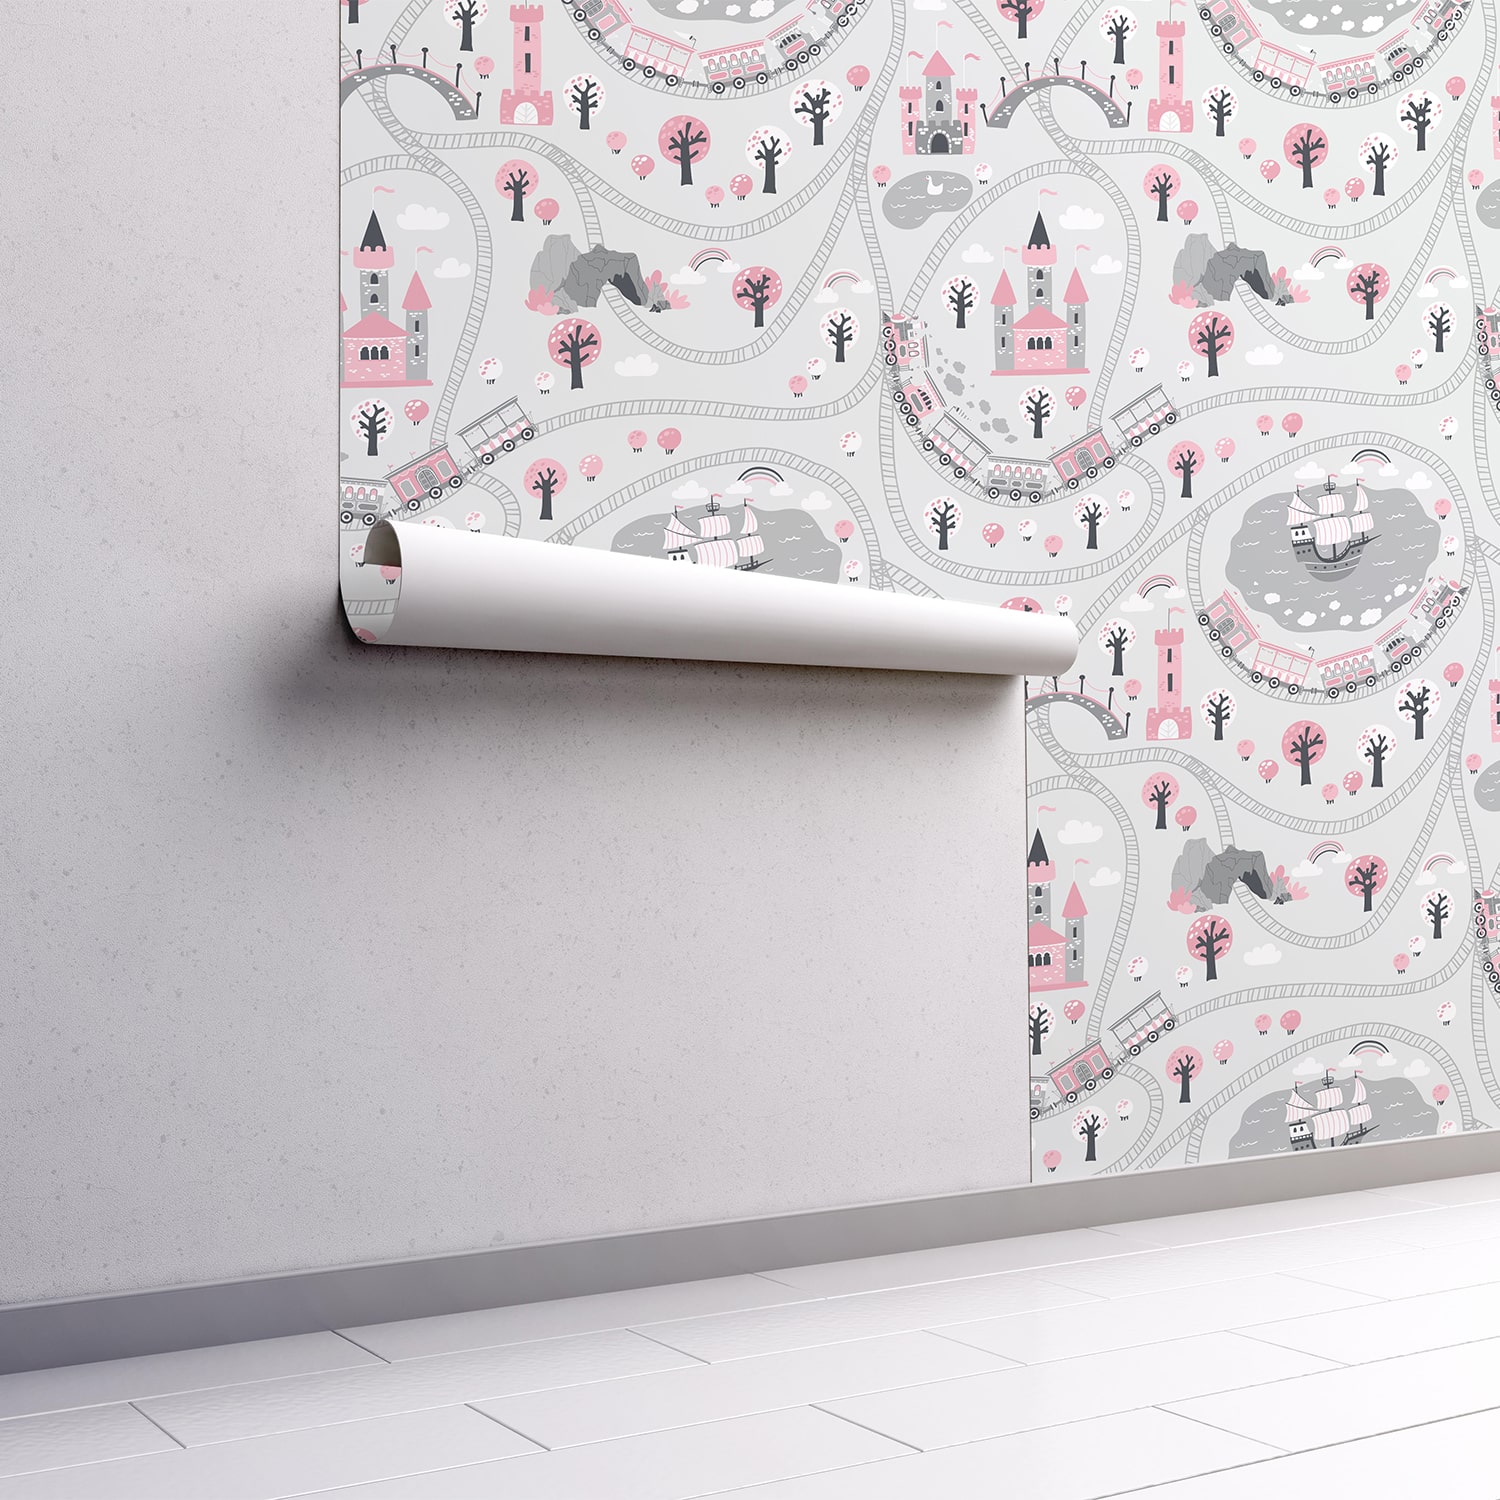 PP83-mur.rouleau-papier-peint-adhesif-decoratif-revetement-vinyle-motifs-chateau-de-princesse-renovation-meuble-mur-min